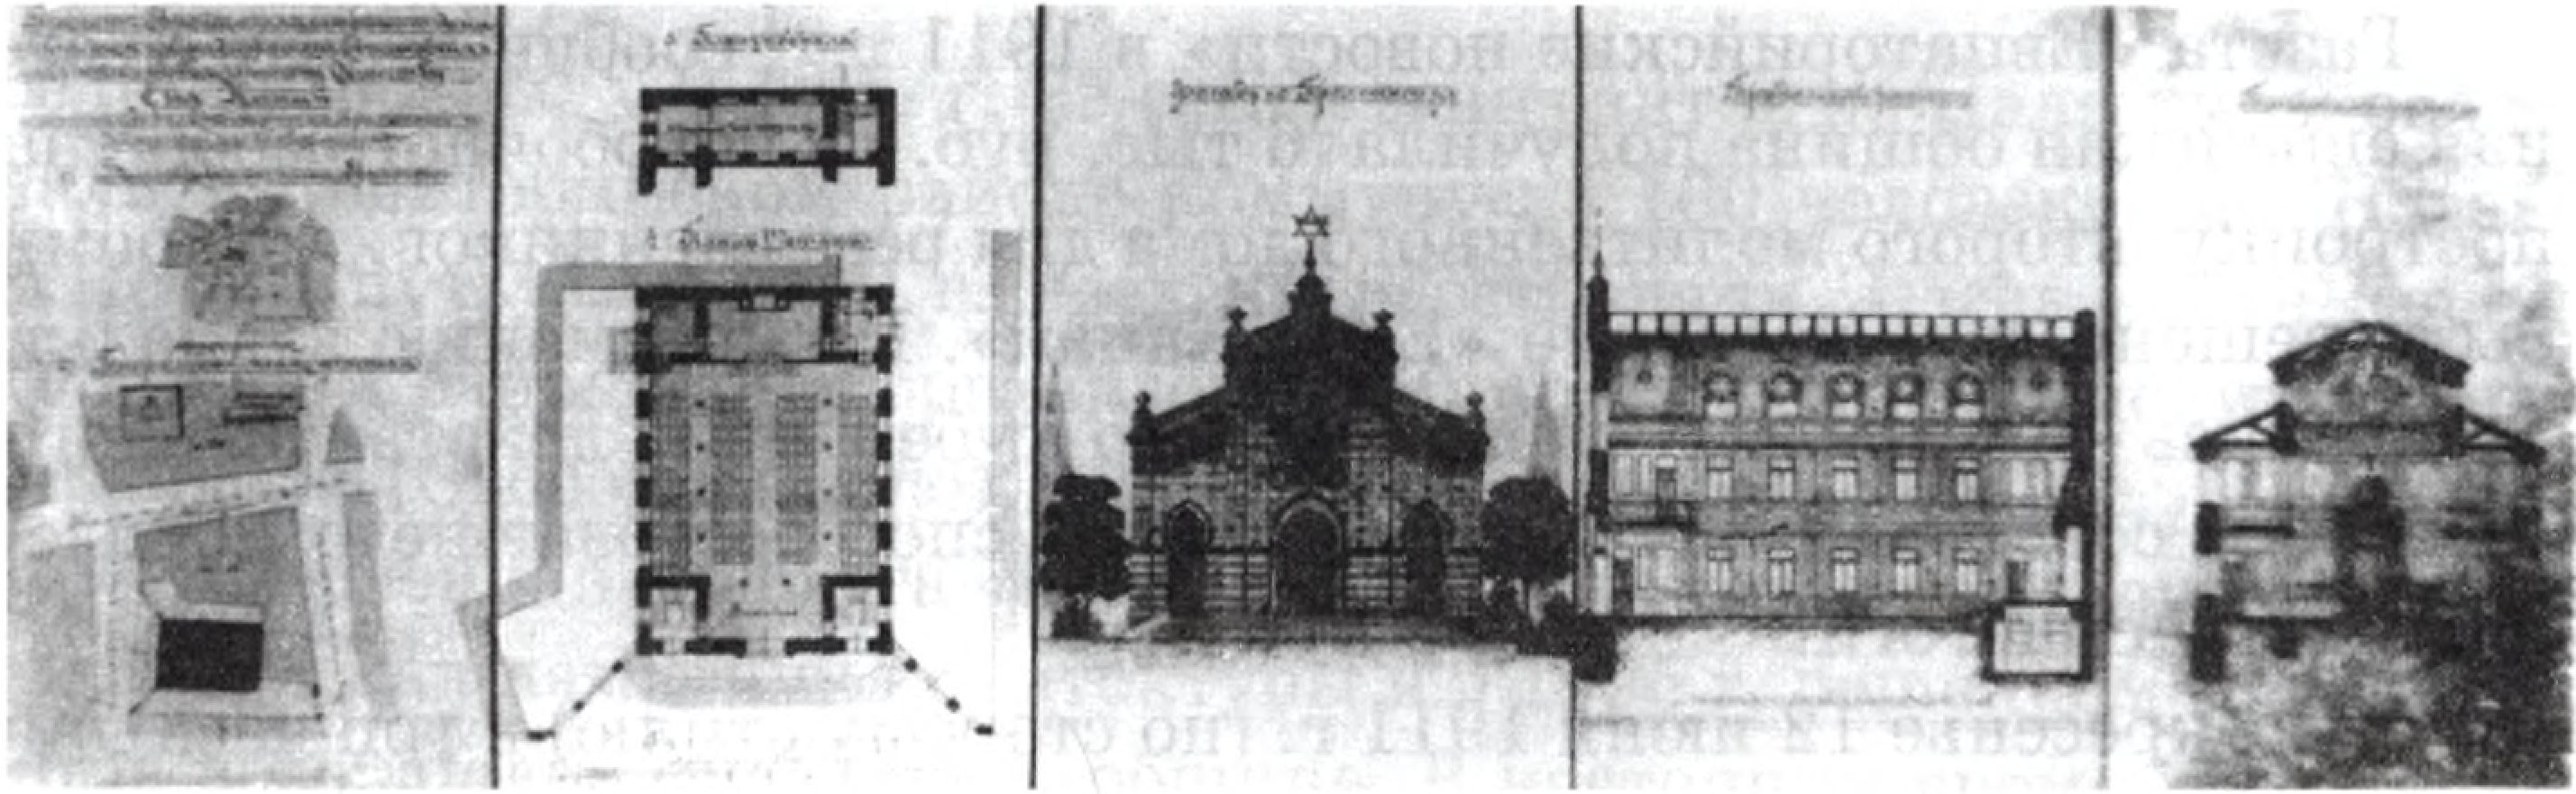 Проект постройки ремесленной синагоги «Егия-Капай». Архитектор А.Л. Генрих. 1911 г.